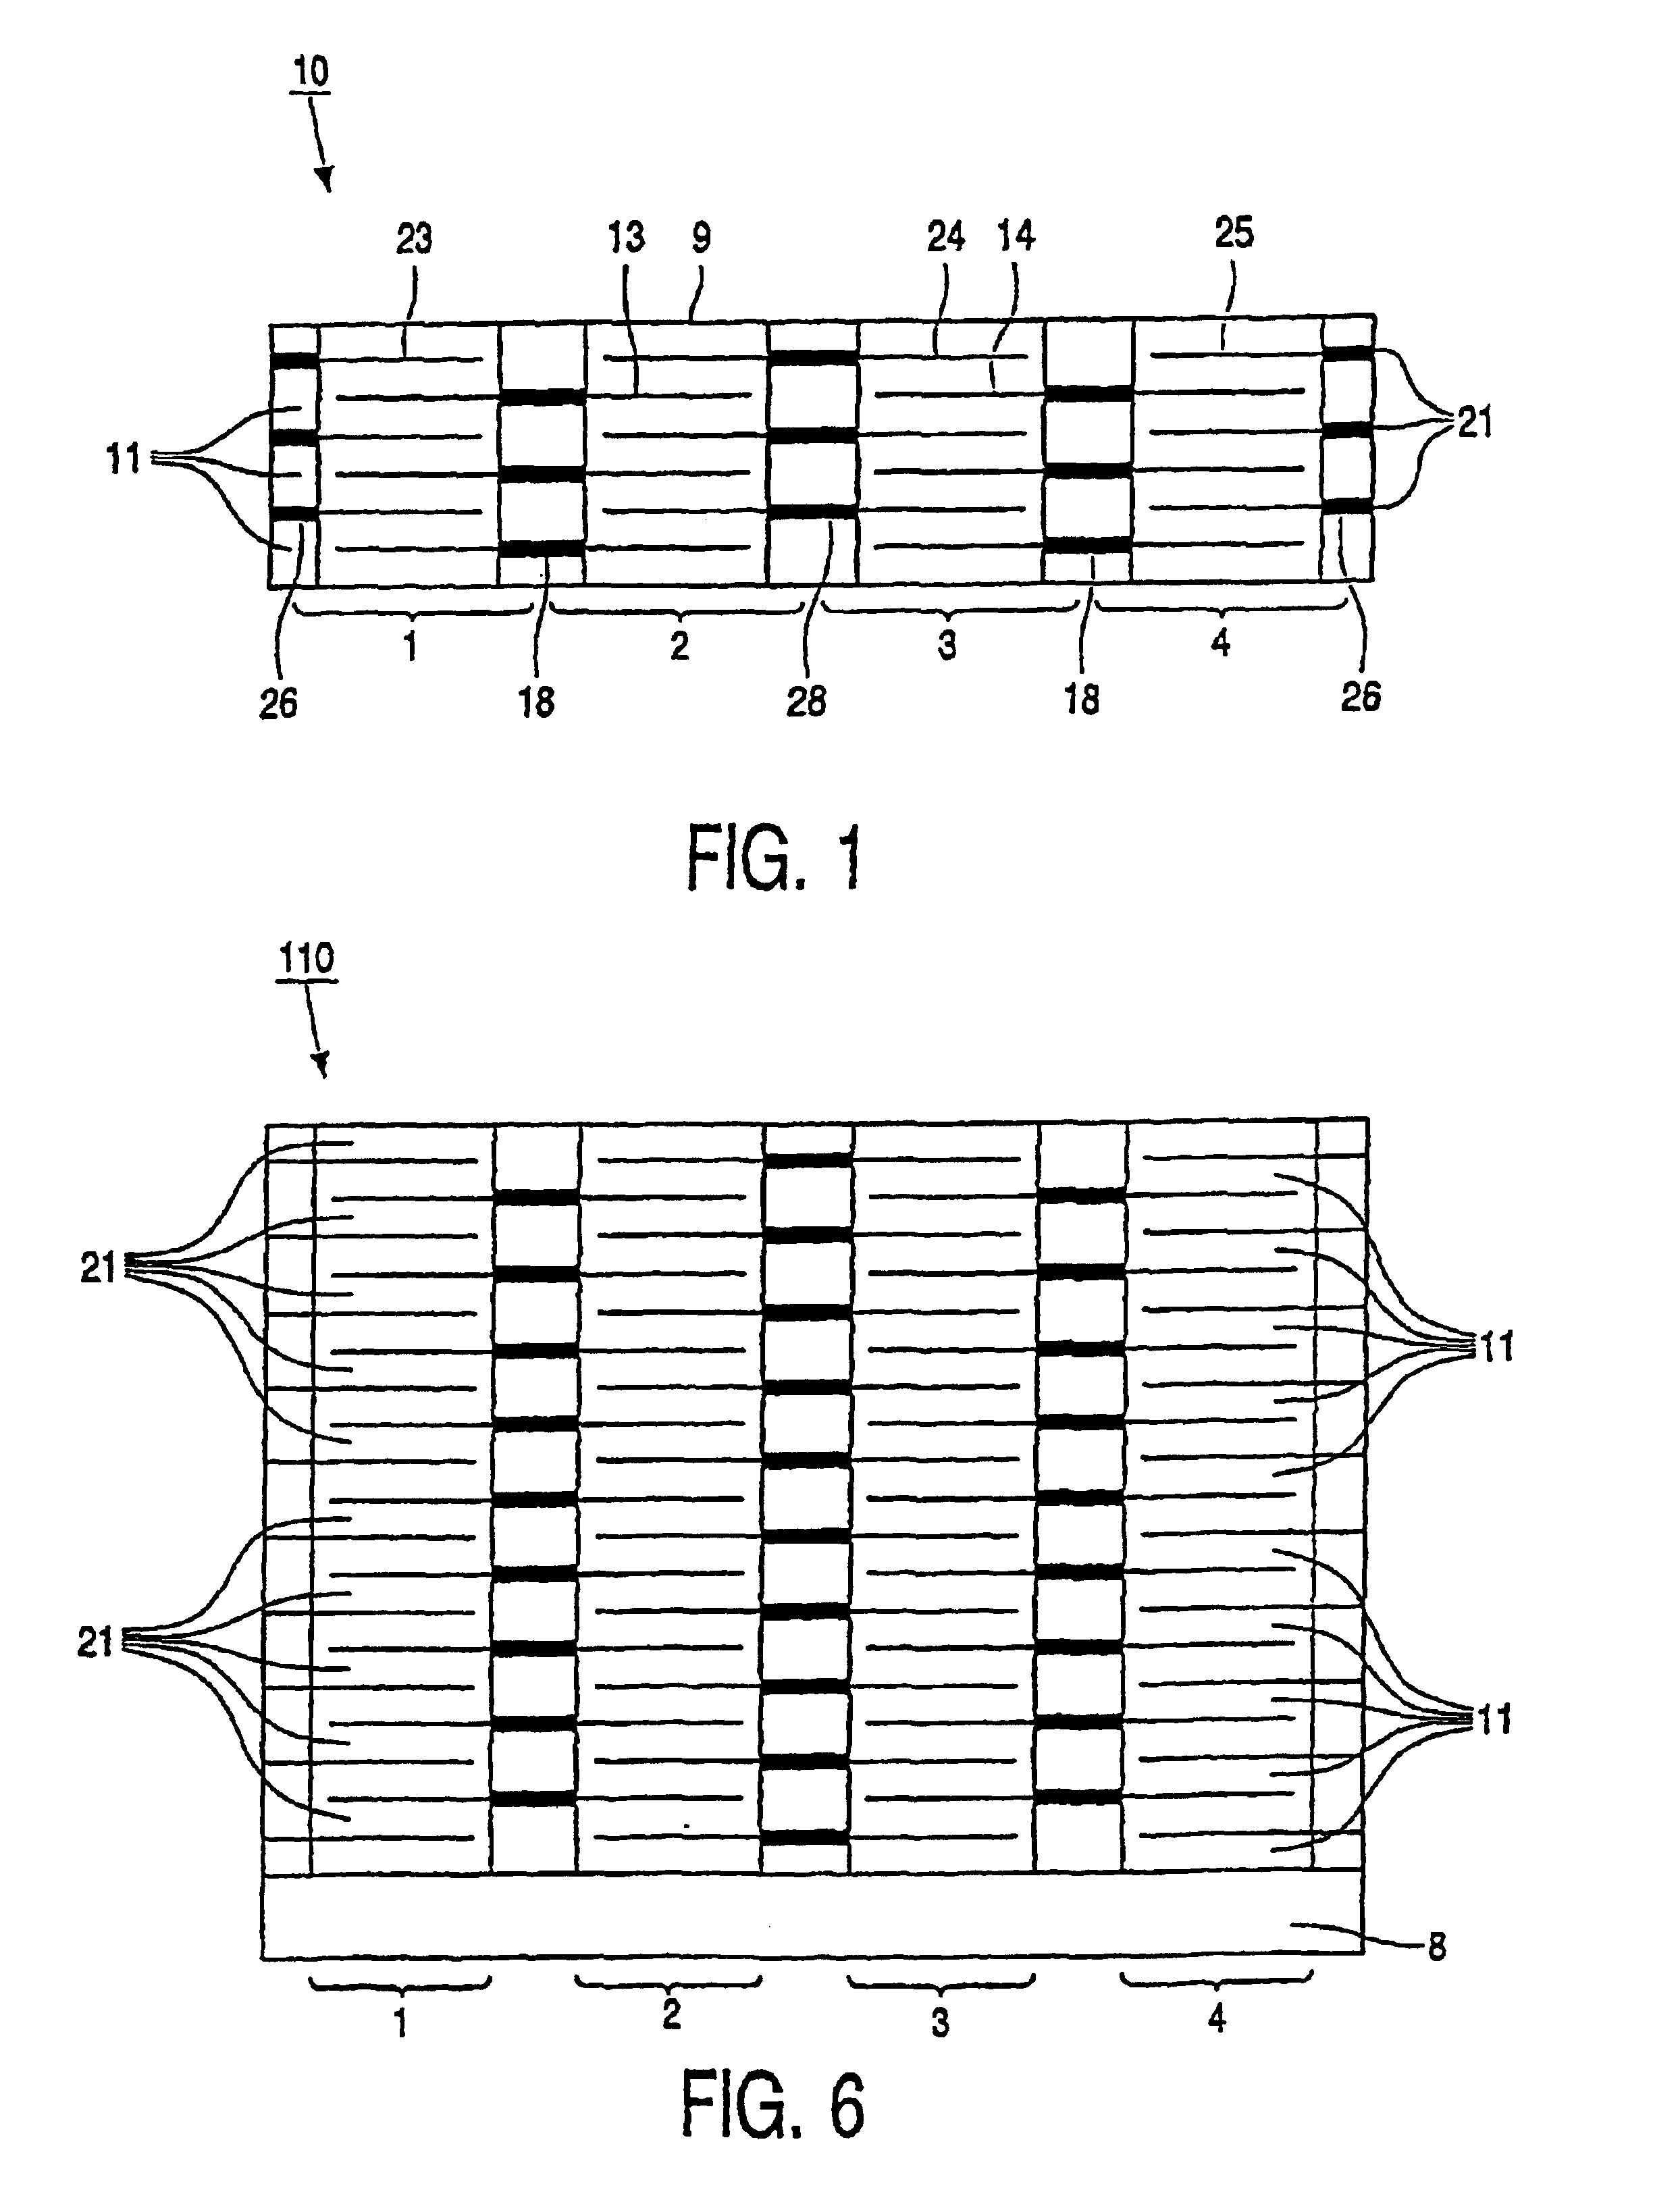 Ceramic multilayer capacitor array